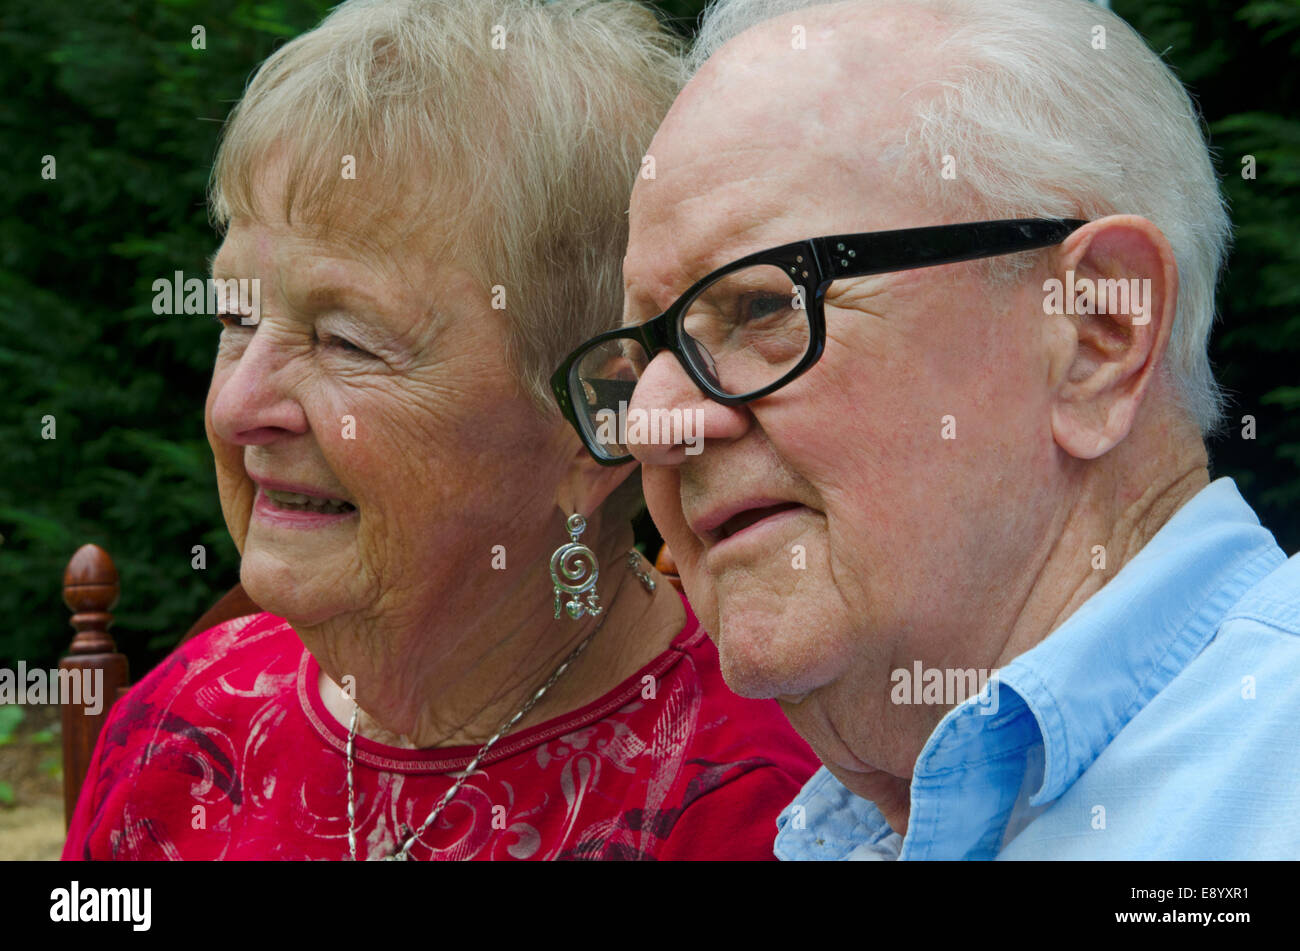 Porträt von einem älteren Ehepaar hautnah. Themen sind Lächeln auf den Lippen und suchen von der Kamera entfernt. Stockfoto